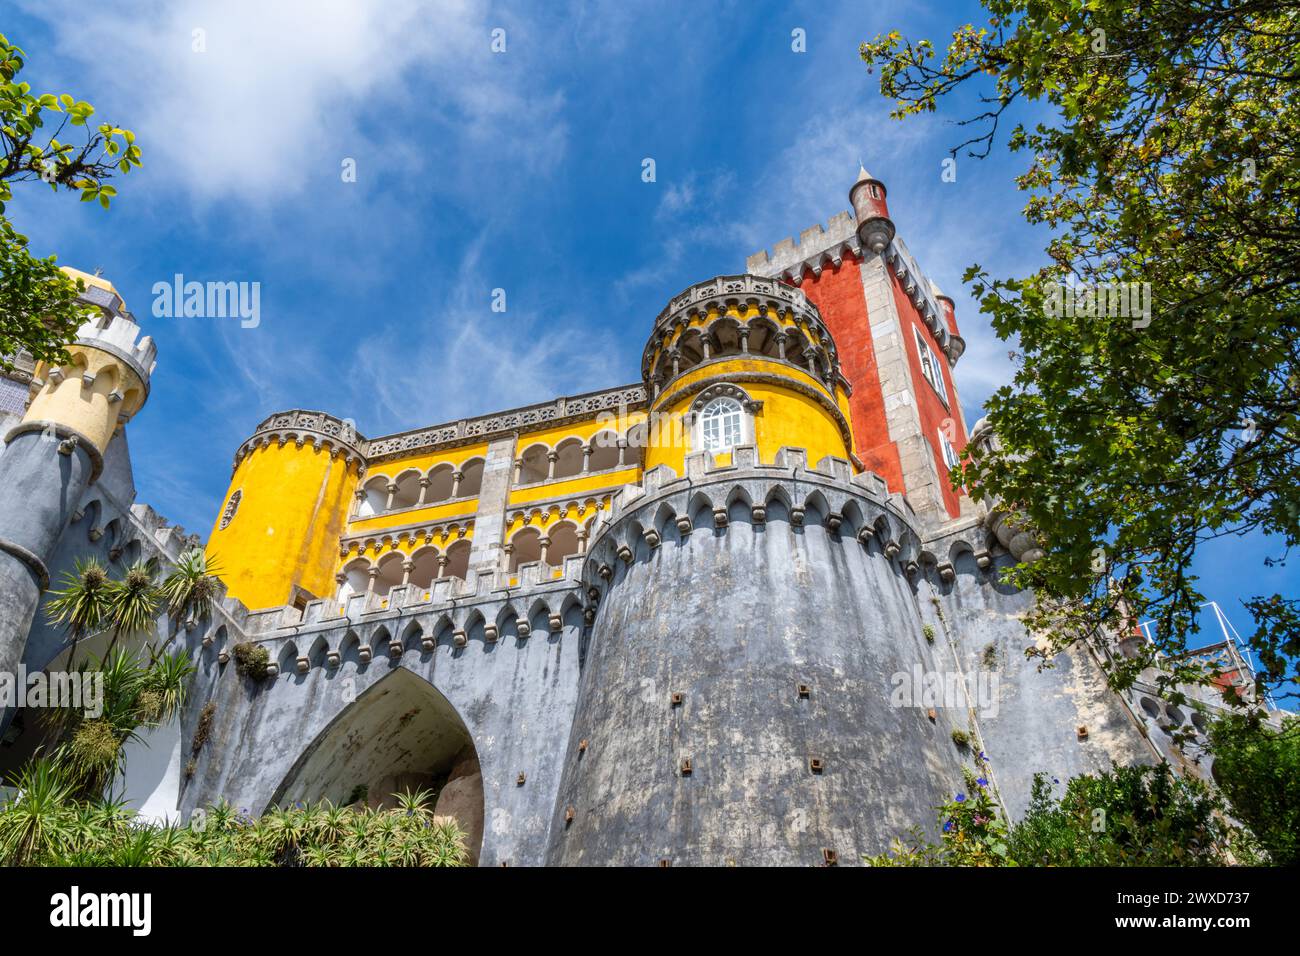 Vue en bas angle sur les murs fortifiés du Palais de Pena dans un style coloré jaune et rouge sur les murs recouverts de quelques palmiers sous un bleu ensoleillé s. Banque D'Images